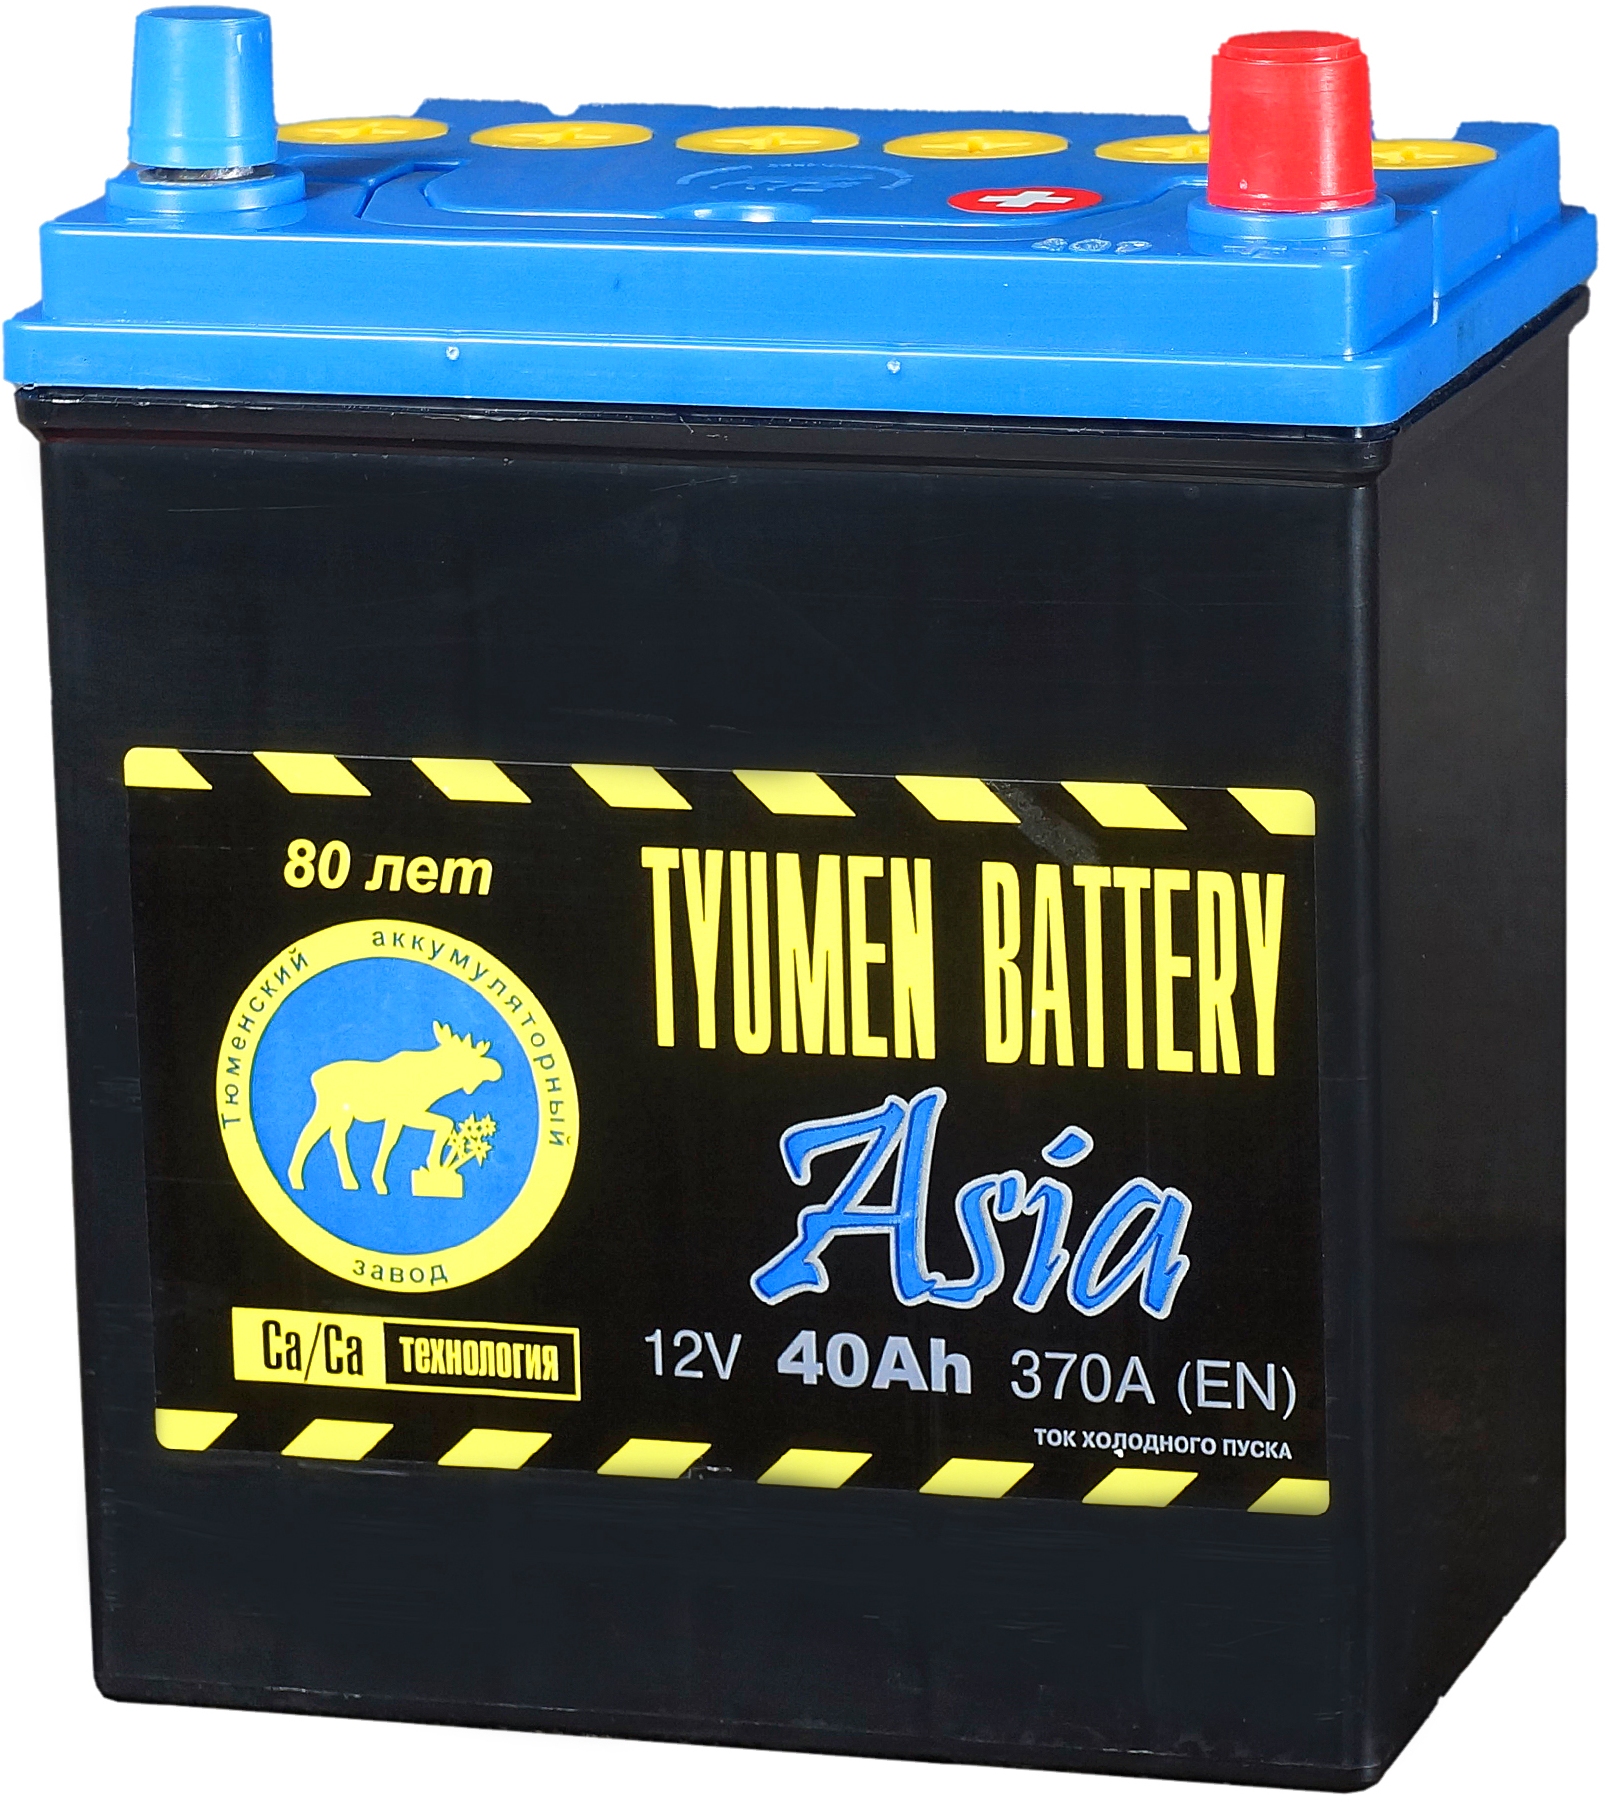 Аккумуляторы тюмень сайт. Аккумулятор Tyumen Battery. Tyumen Battery вся линейка аккумуляторов. Пусковой АКБ nke 1658044369. Аккумулятор Tyumen Battery Standard 215 а*ч.